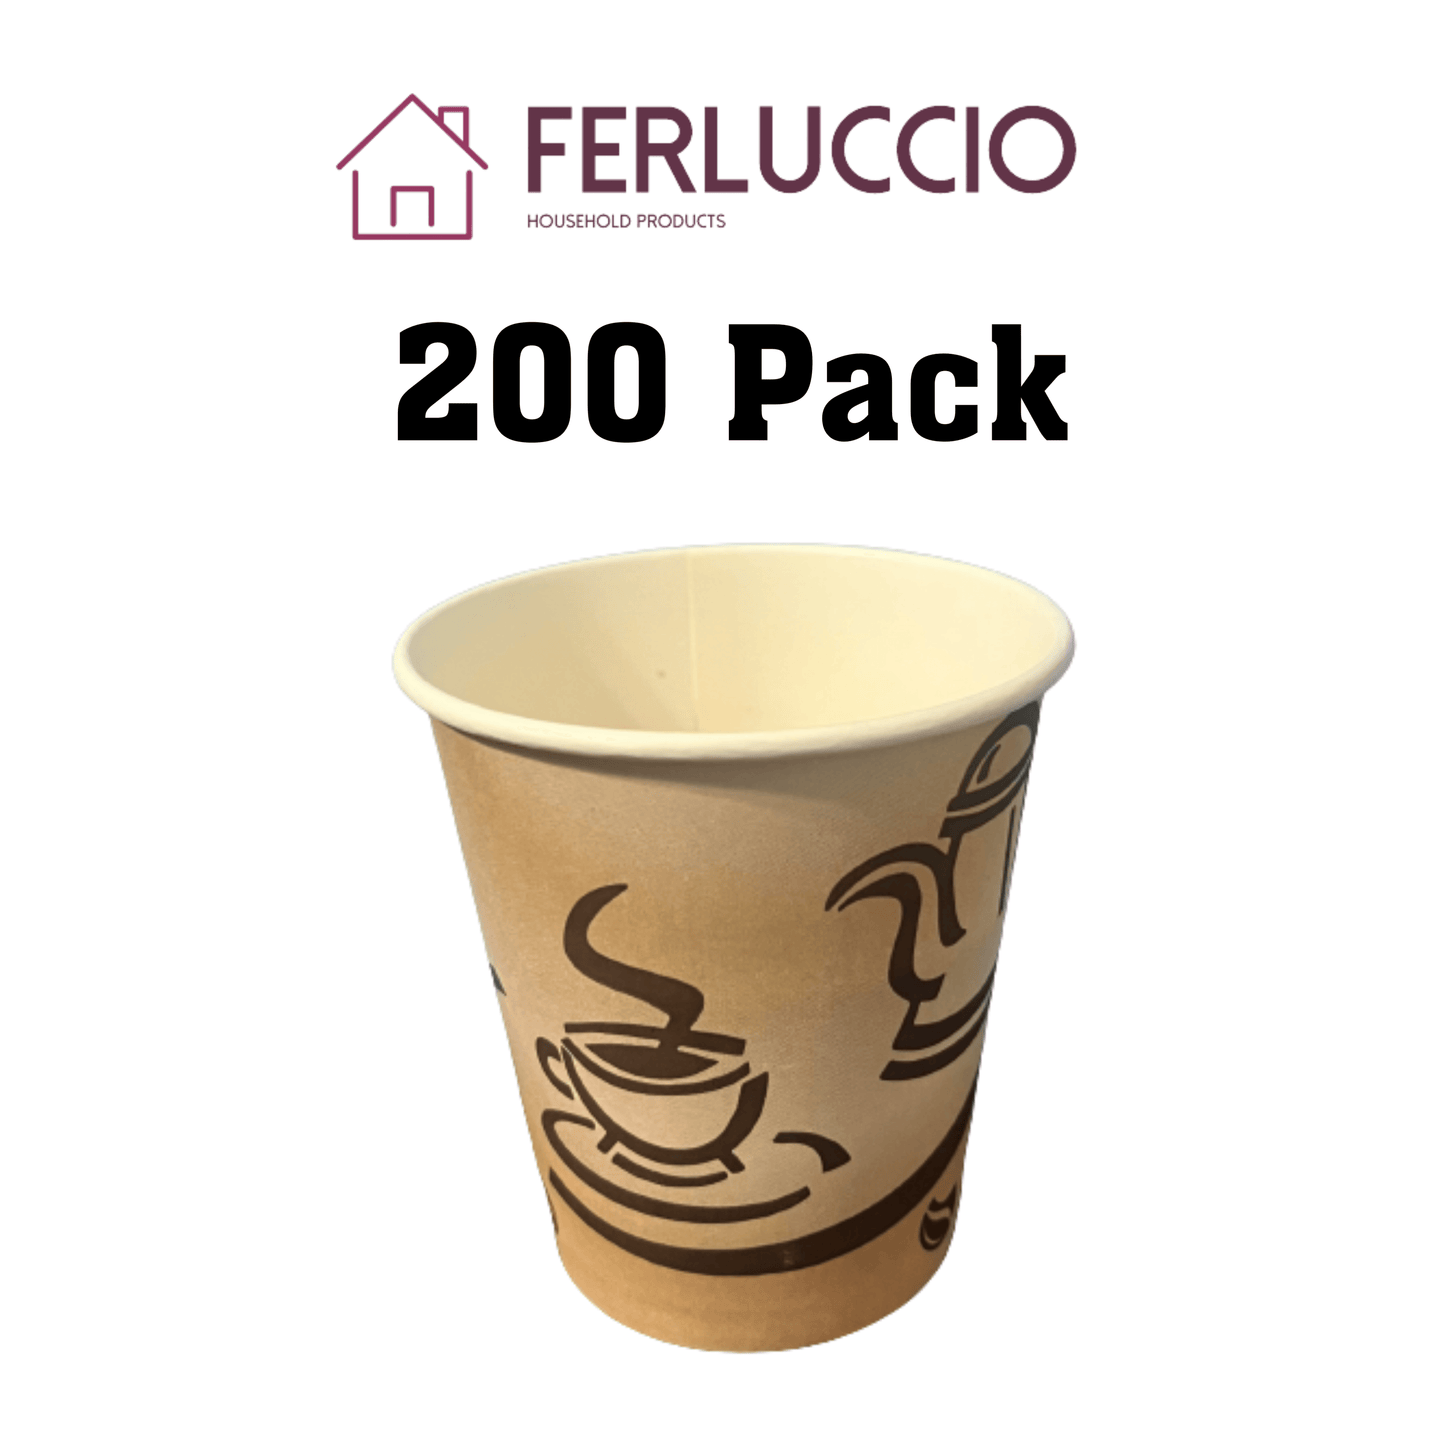 Ferluccio Hot Paper Coffee/Tea Cups 10 oz - PremiumBrandGoods